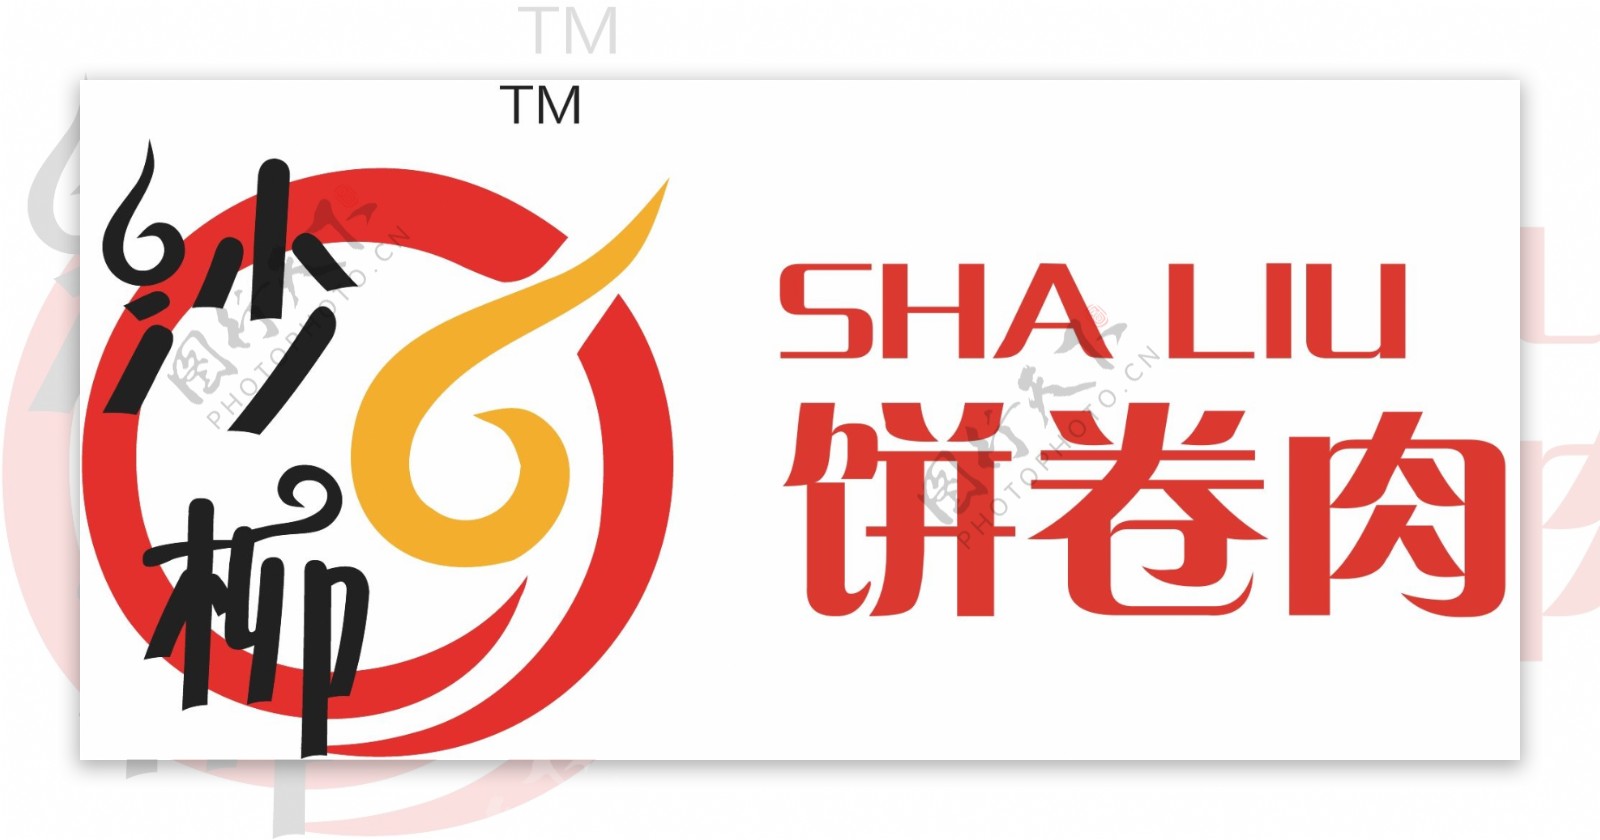 中式快餐厅logo